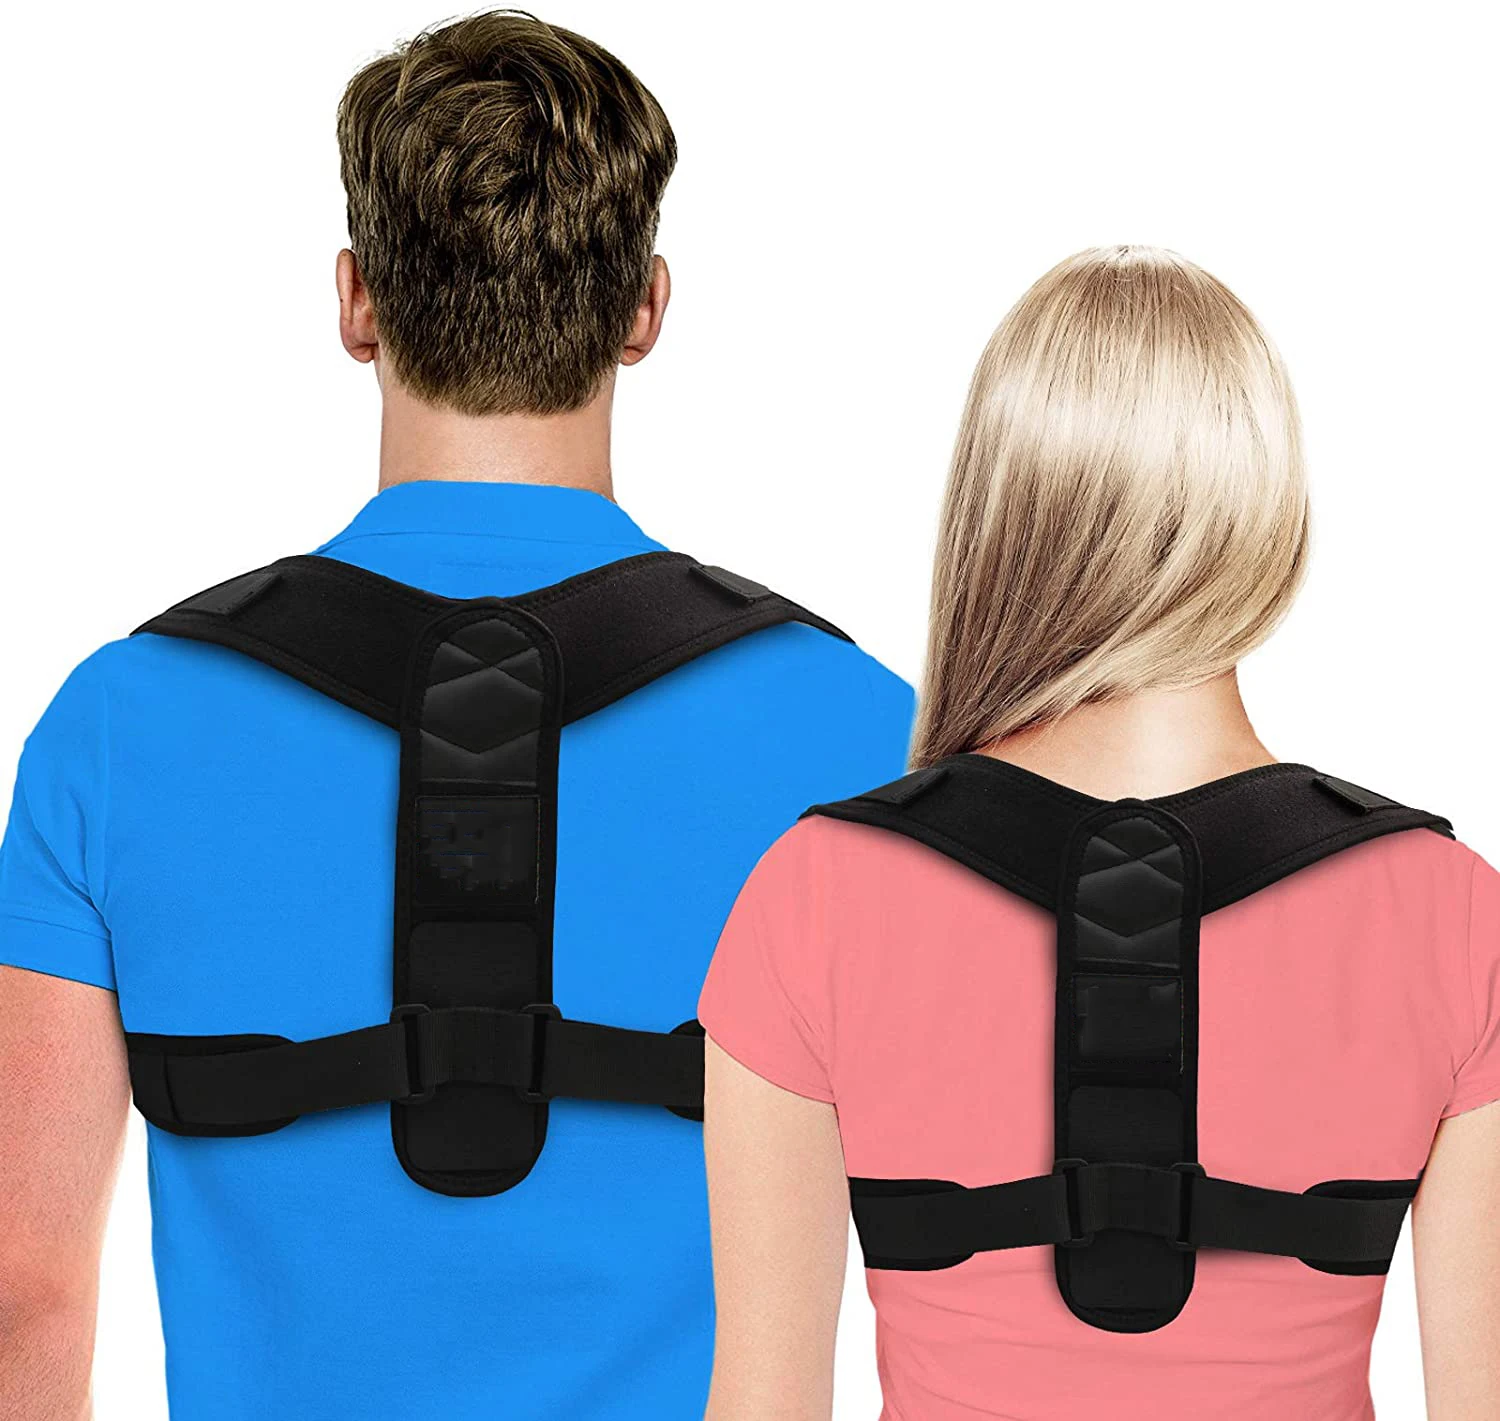 

Amazon best selling neoprene back posture shoulder support brace spine posture corrector belt for adults, Black or customized color